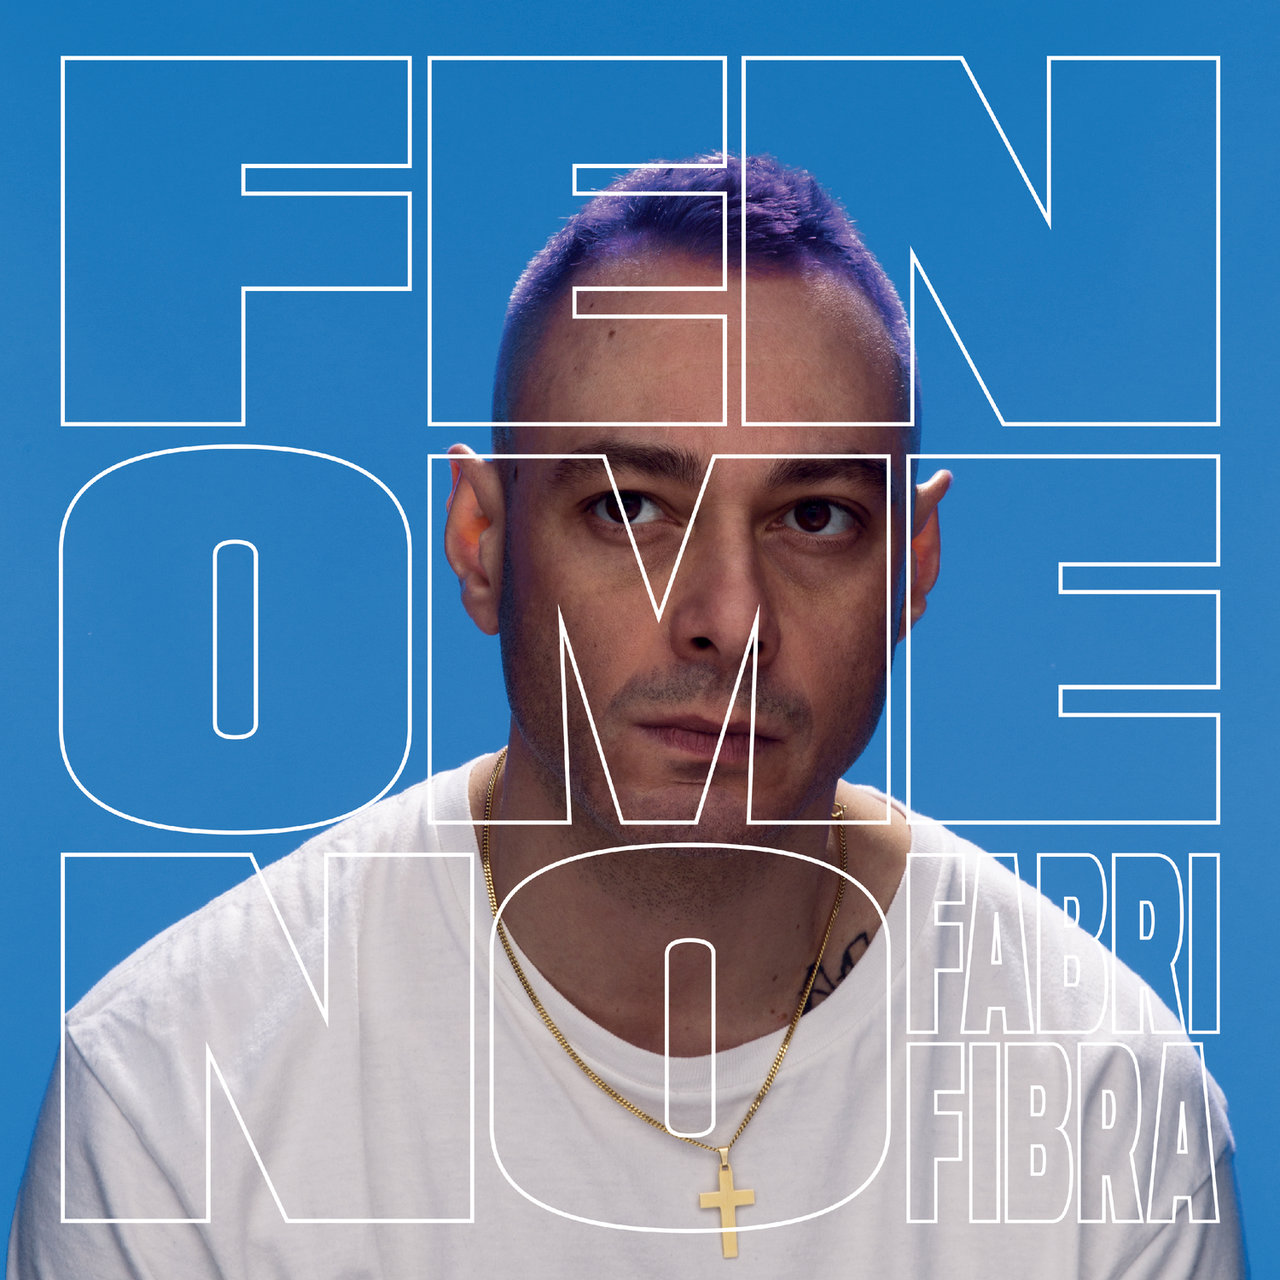 Fabri Fibra featuring Thegiornalisti — Pamplona cover artwork